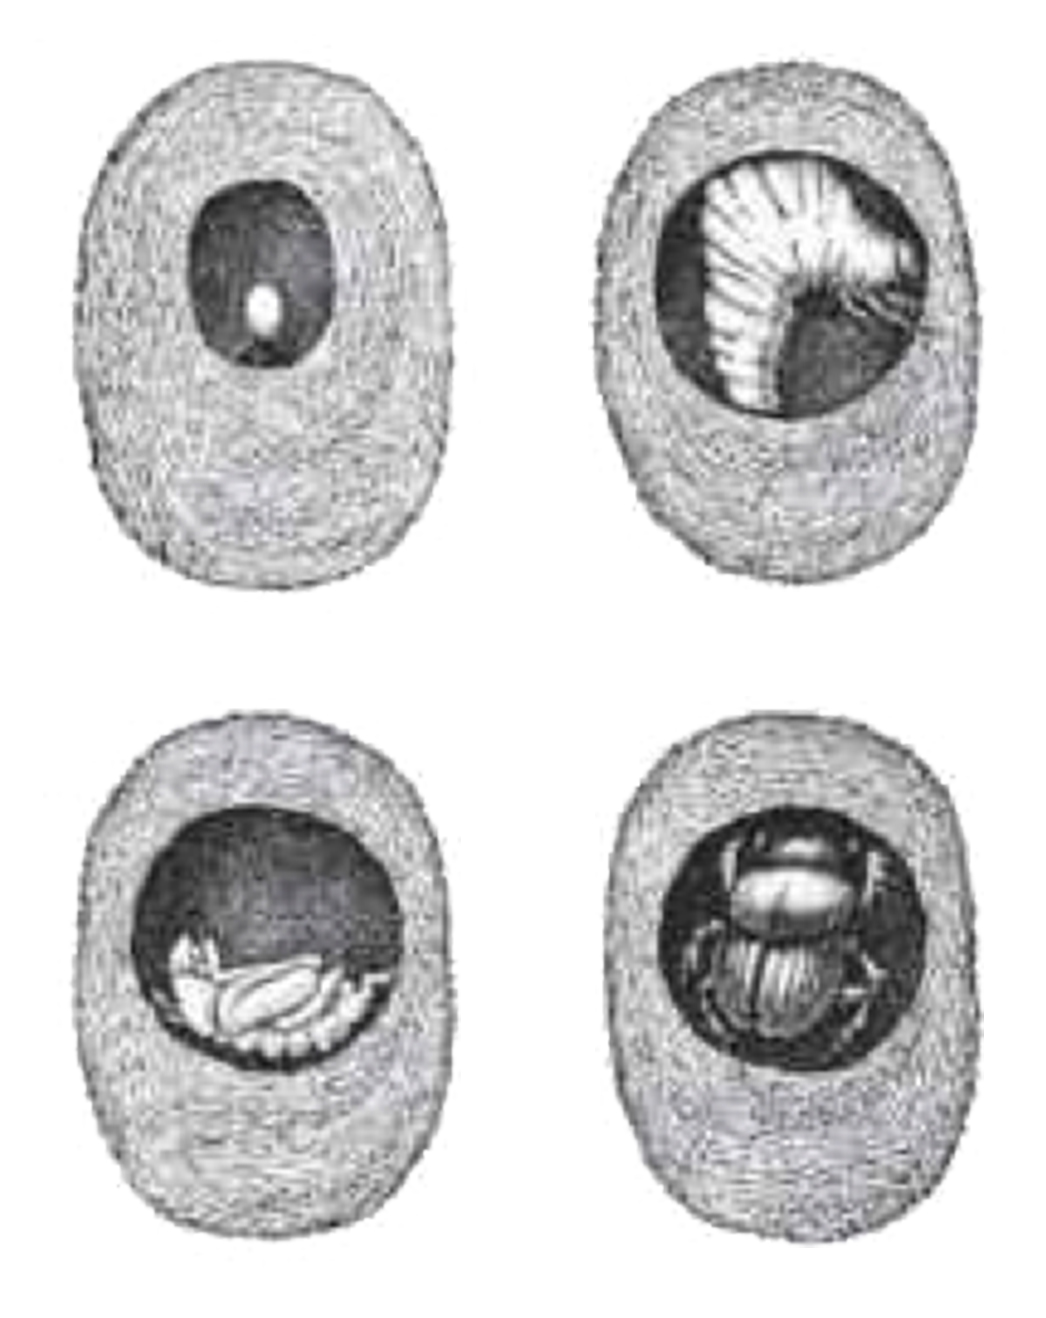 Figure showing beetle development